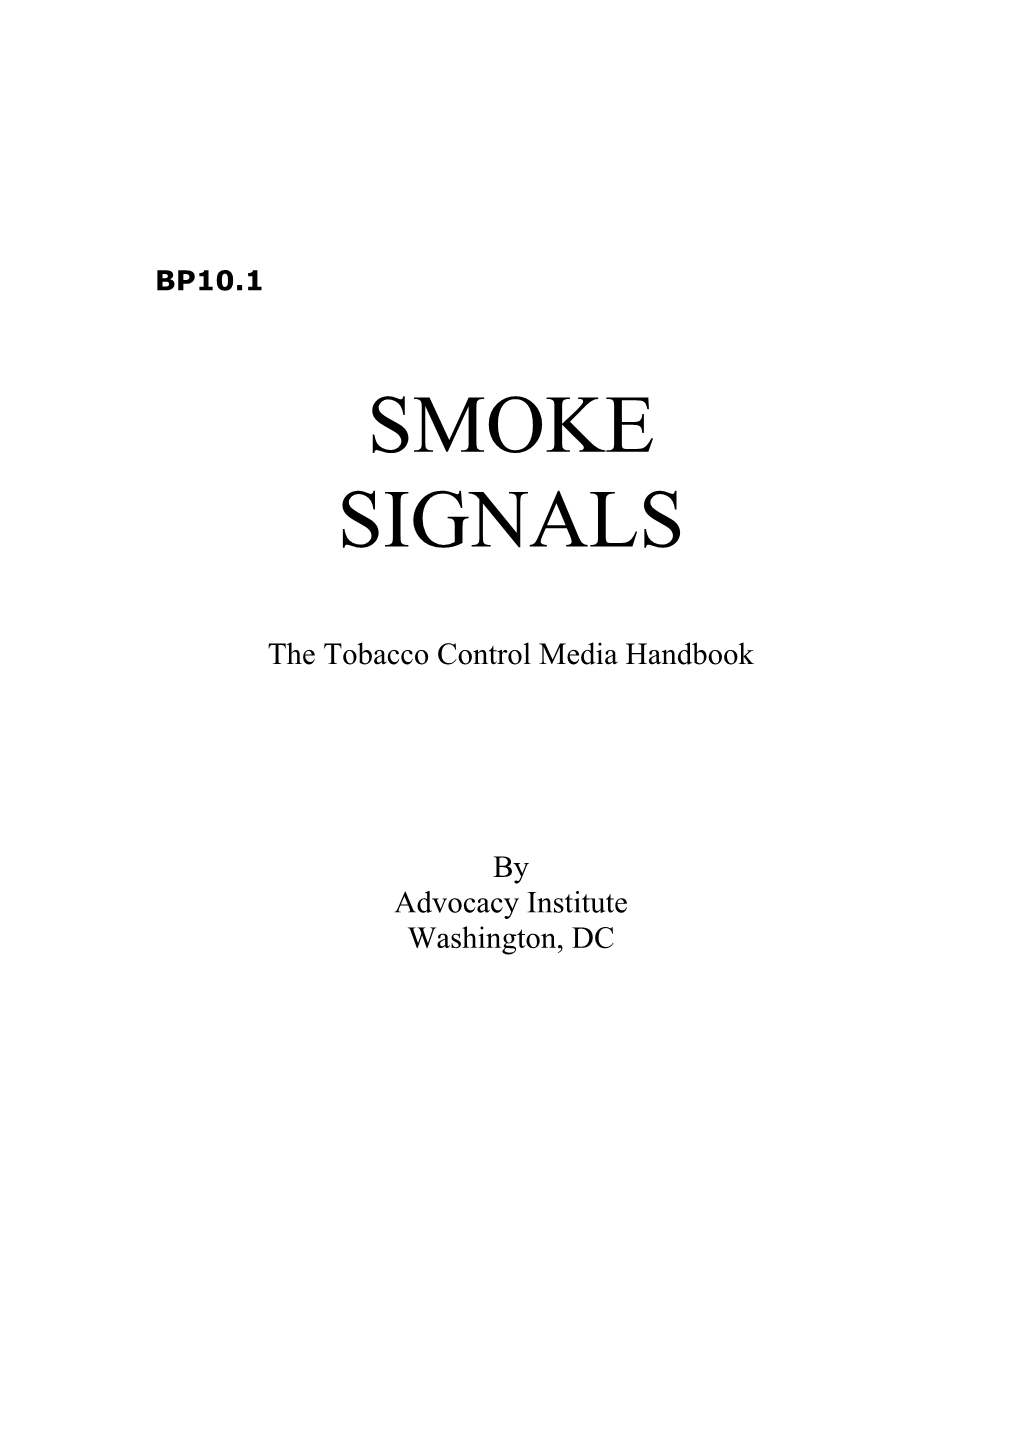 The Tobacco Control Media Handbook